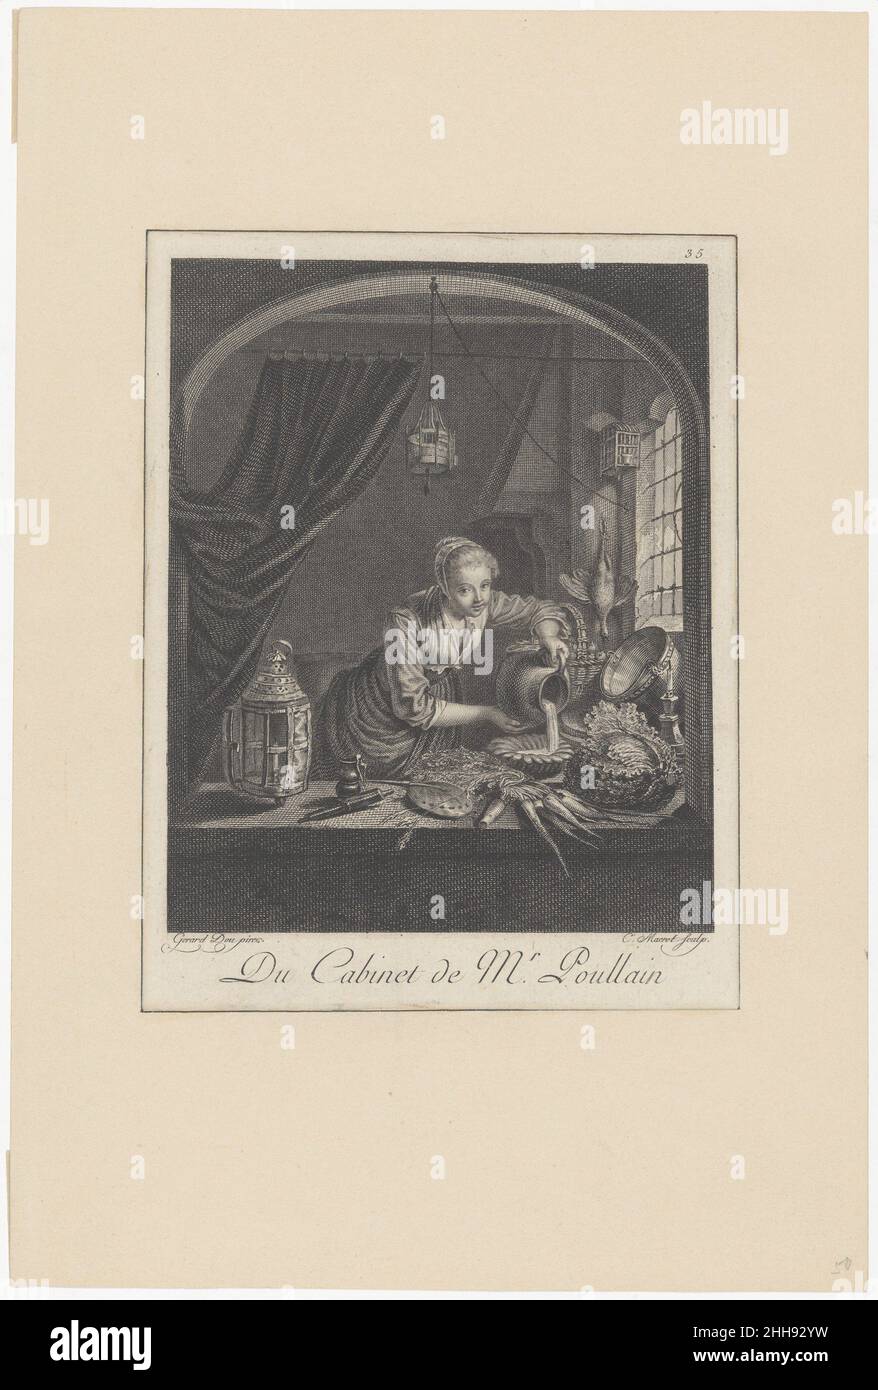 Milkmaid après la peinture de G.Dou dans le Cabinet de M. Poullain mi-17th siècle après Gerrit Dou Dutch cette modeste impression enregistre la peinture de Dou (Musée du Louvre, Paris) peu après 1780, date à laquelle elle a été vendue de la collection Poulain à Paris.Comme dans des scènes similaires inventées par Dou pendant les 1640s et 1650s, la jolie femme de ménage de cuisine est entourée de motifs qui avaient pendant des décennies représenté des parties privées mâles et femelles.Perdu dans la gravure, cependant, est le jeu original entre deux formes de séduction: Celle de la jeune femme et son regard amical, d'une part, et celle de l'illustre (wh Banque D'Images